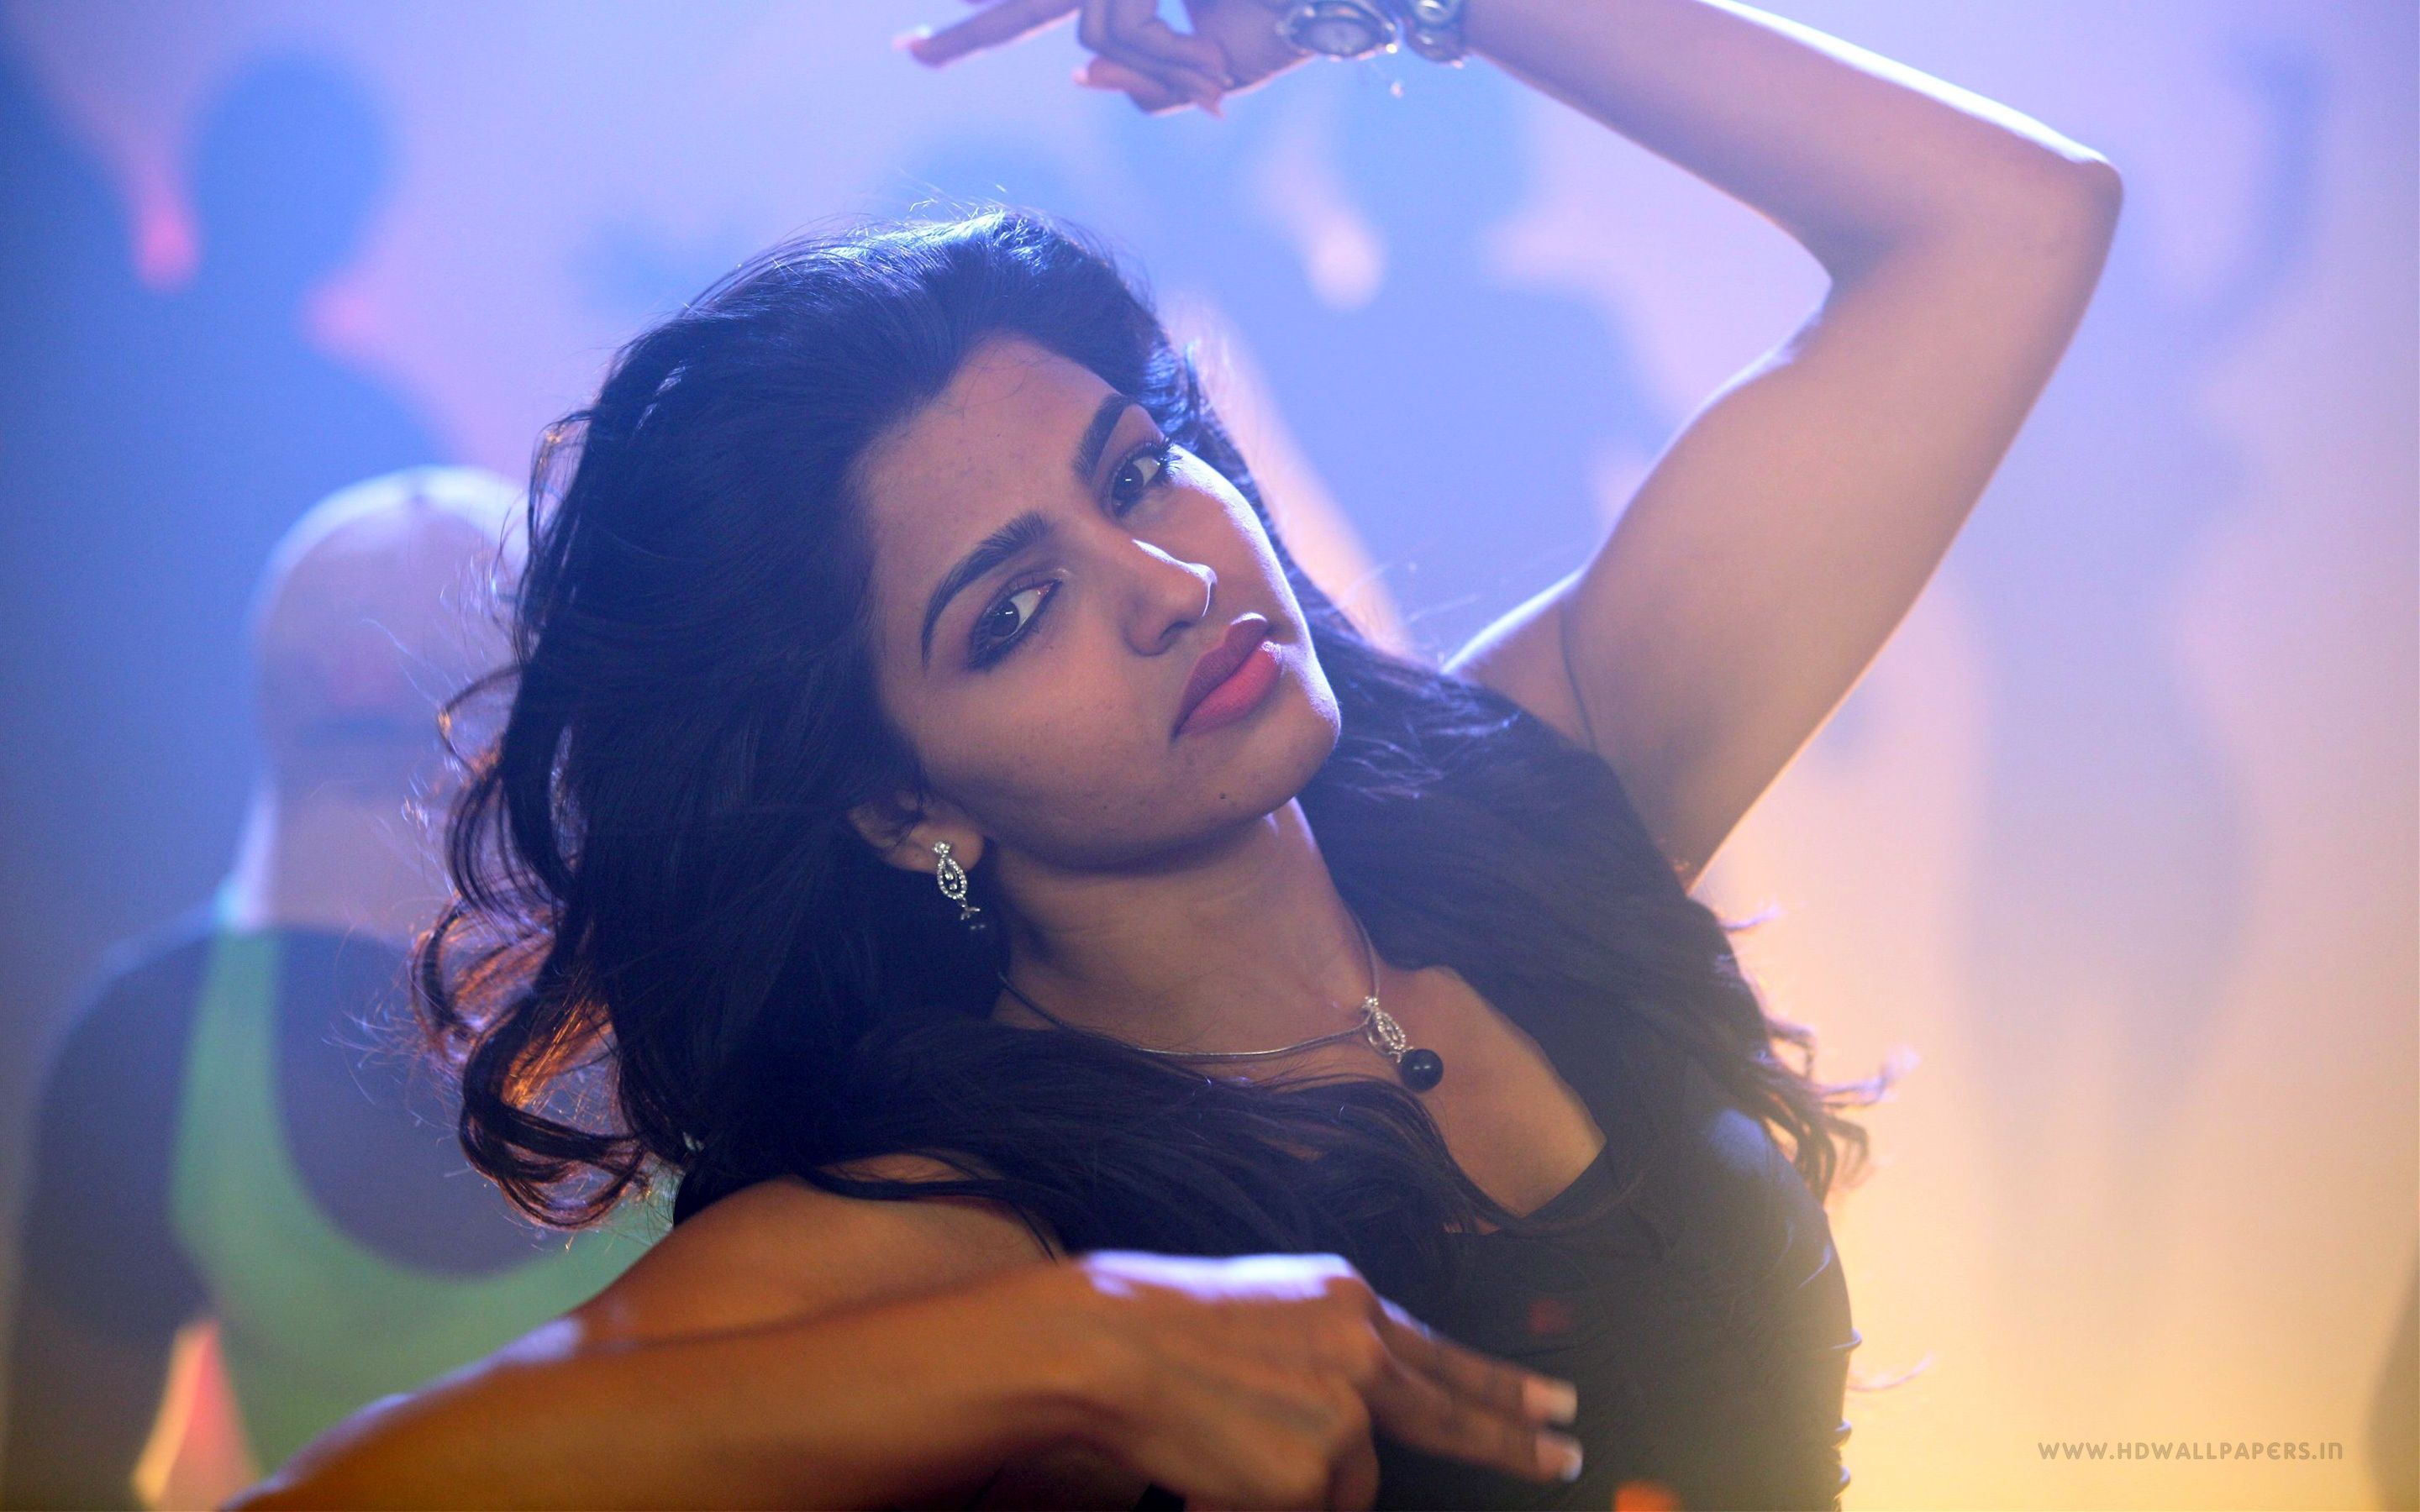 Tamil actress HD photo free download. Tamil Actress HD